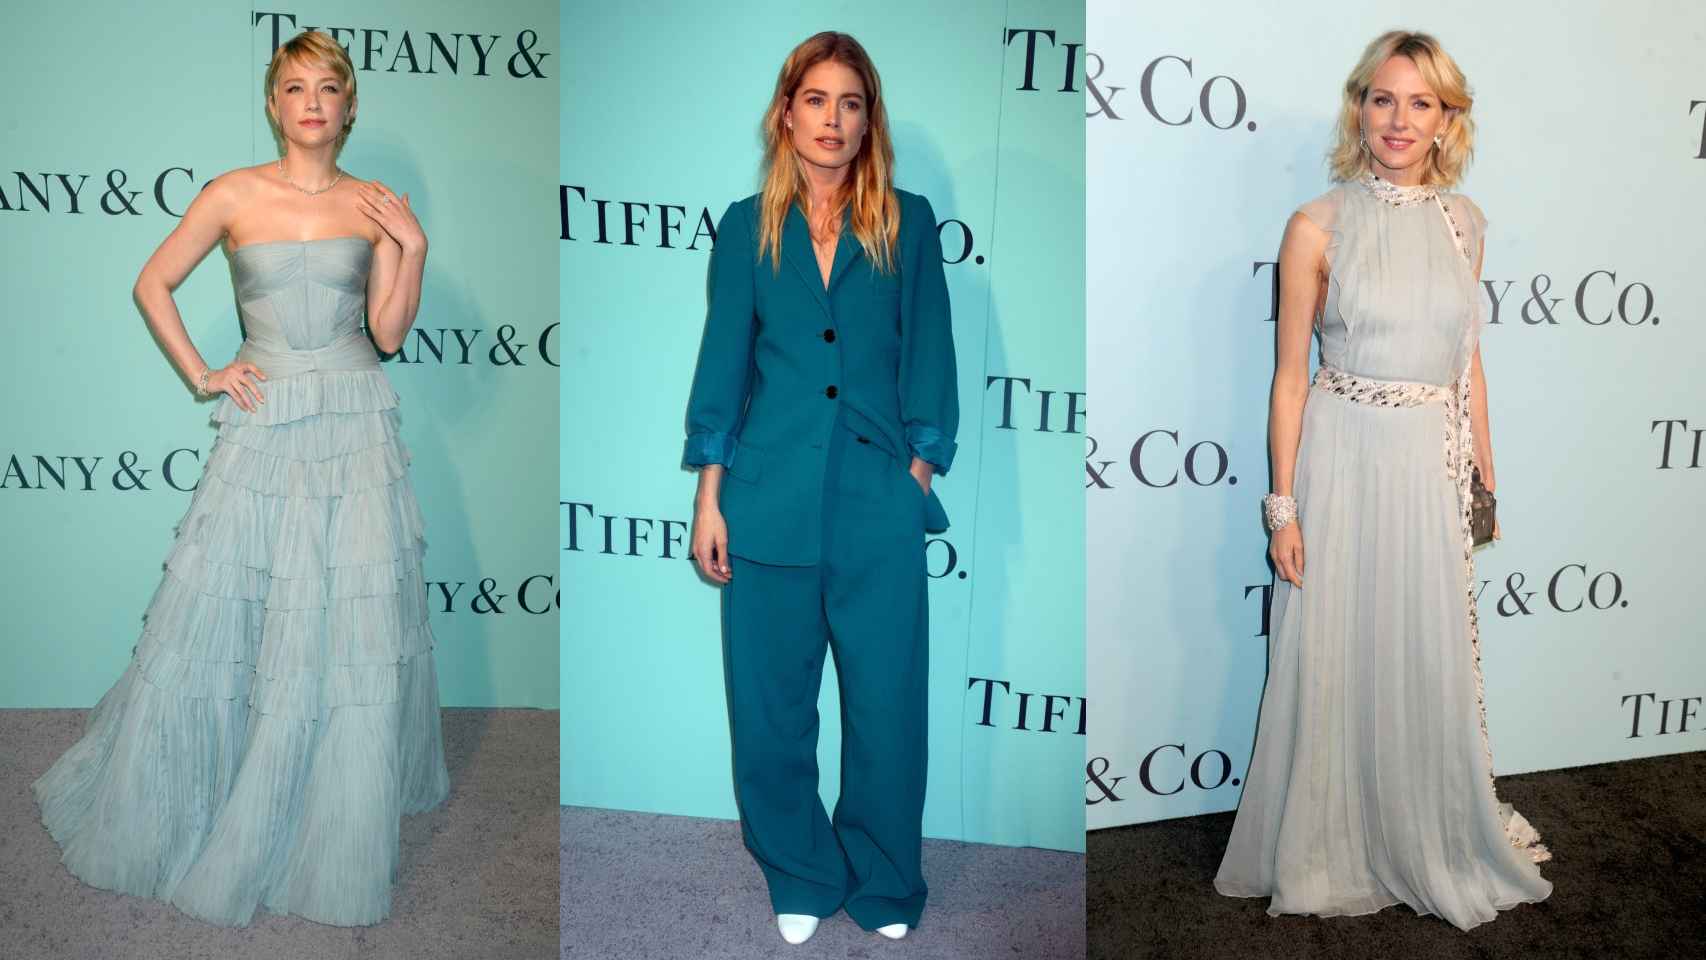 De izquierda a derecha, Haley Bennet, Doutzen Kroes y Naomi Watts en un evento de Tiffany & Co. en 2017